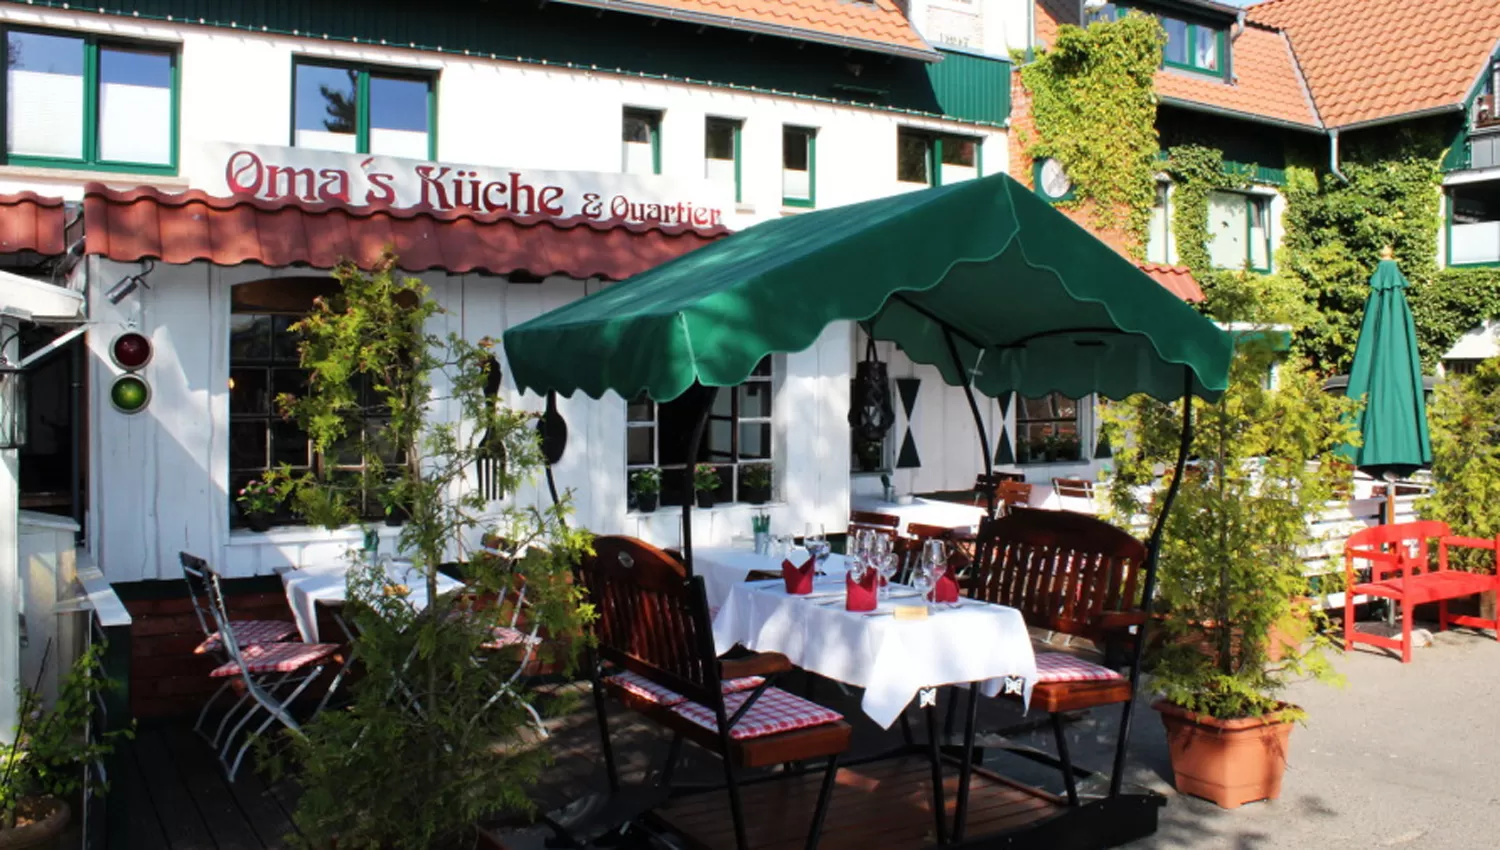 OMA'S KUCHE. El restaurante alemán que prohibirá el ingreso a niños.